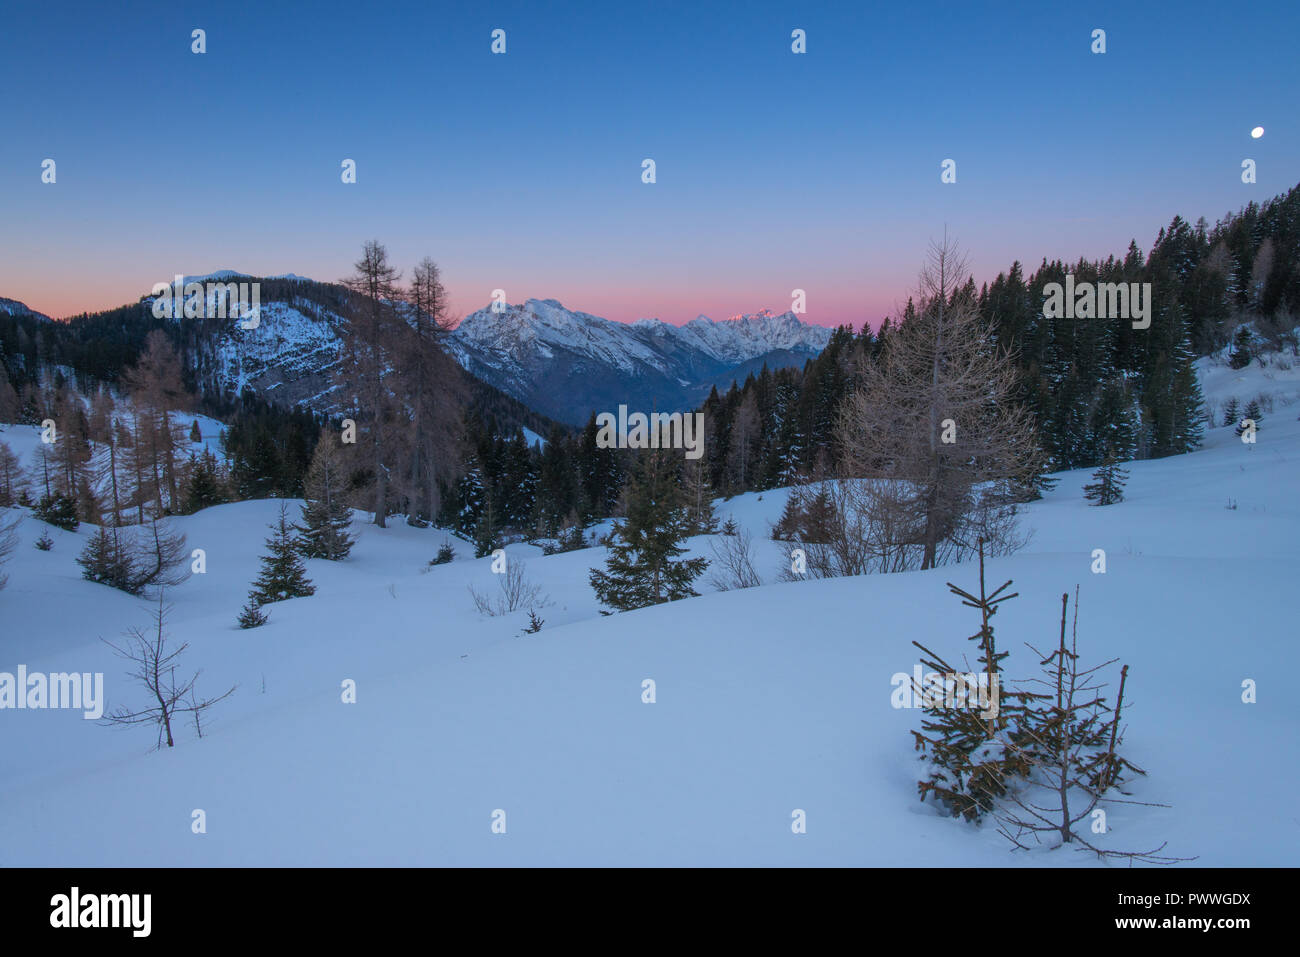 Paisible, serein avec sunrise alpenglow sur les Alpes italiennes. Premier jour de l'année, de la neige fraîche, des couleurs vives et des montagnes aux sommets enneigés au milieu des arbres. Banque D'Images